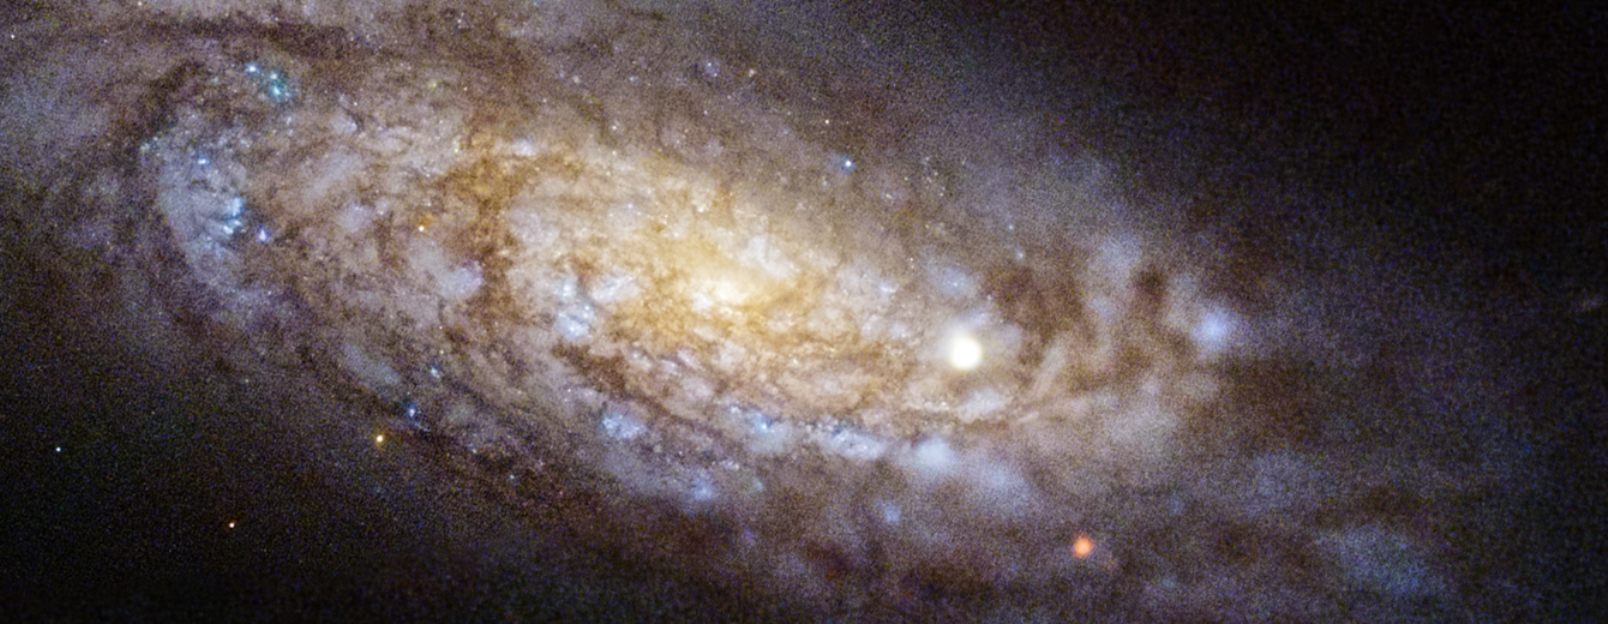 NGC 4567 et NGC 4568 (surnommé les Galaxies du papillon ou des Jumeaux siamois) sont un ensemble de galaxies spirales non barrées découvertes par William Herschel en 1784. Ils font partie de l’Amas de galaxies de la Vierge. SN 2020fqv, était visible dans NGC 4568. ©  Nasa, ESA, Ryan Foley (UC Santa Cruz), Joseph DePasquale (STScI)